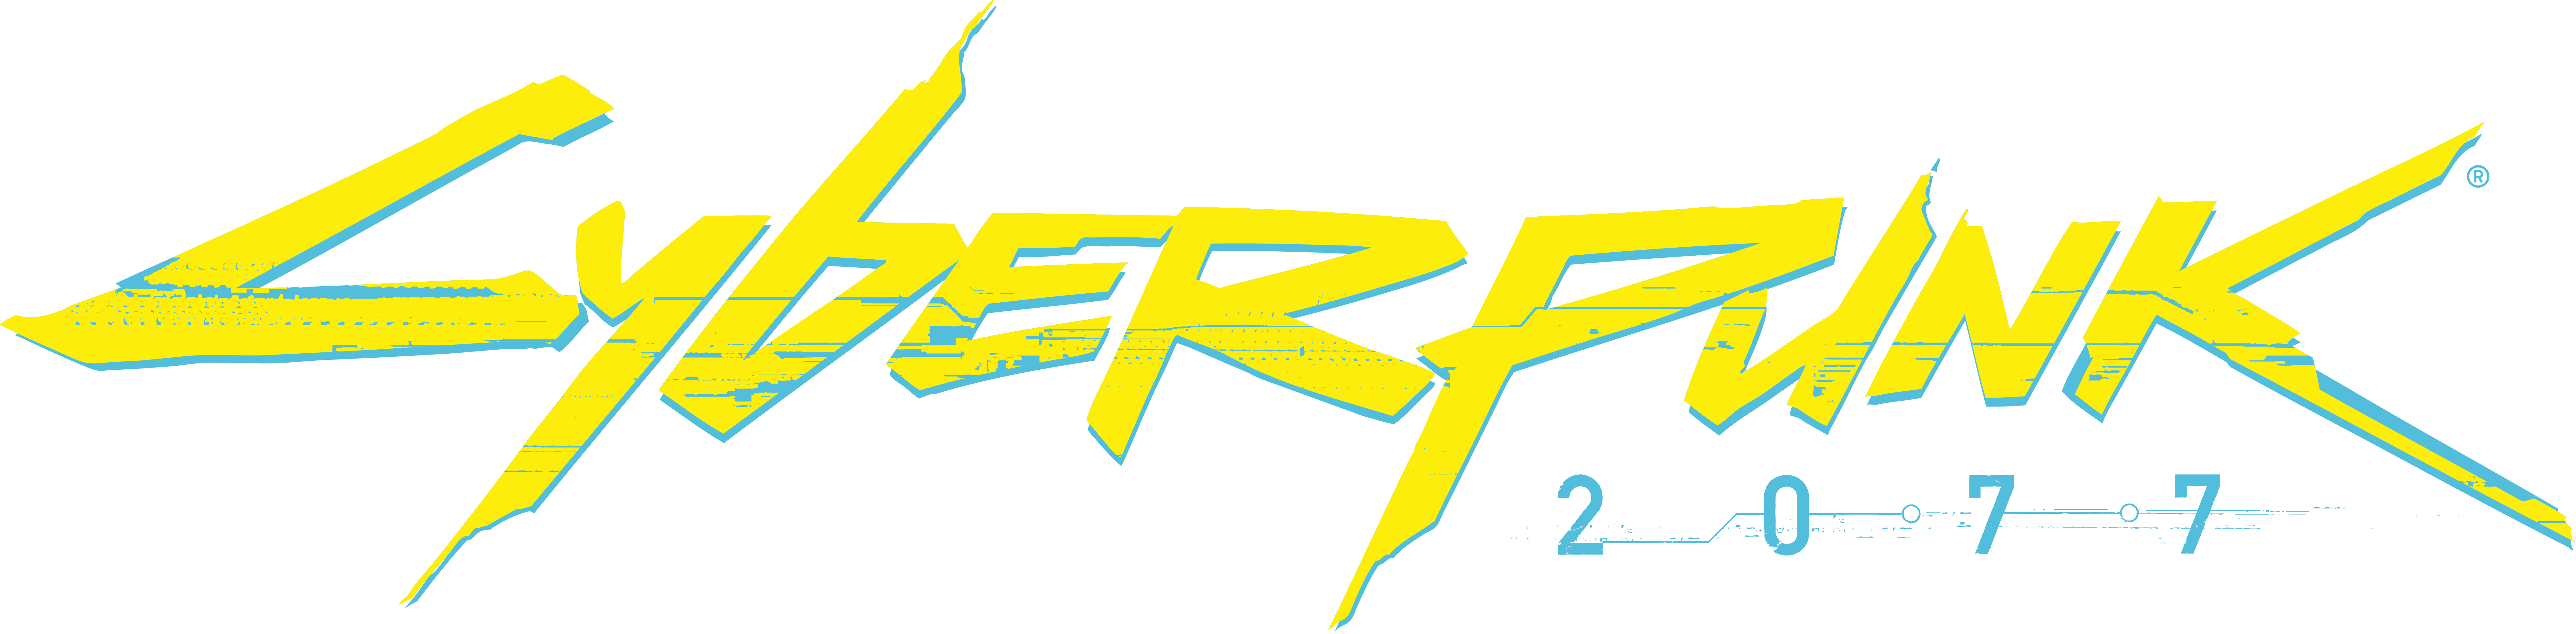 La date de sortie de Cyberpunk 2077